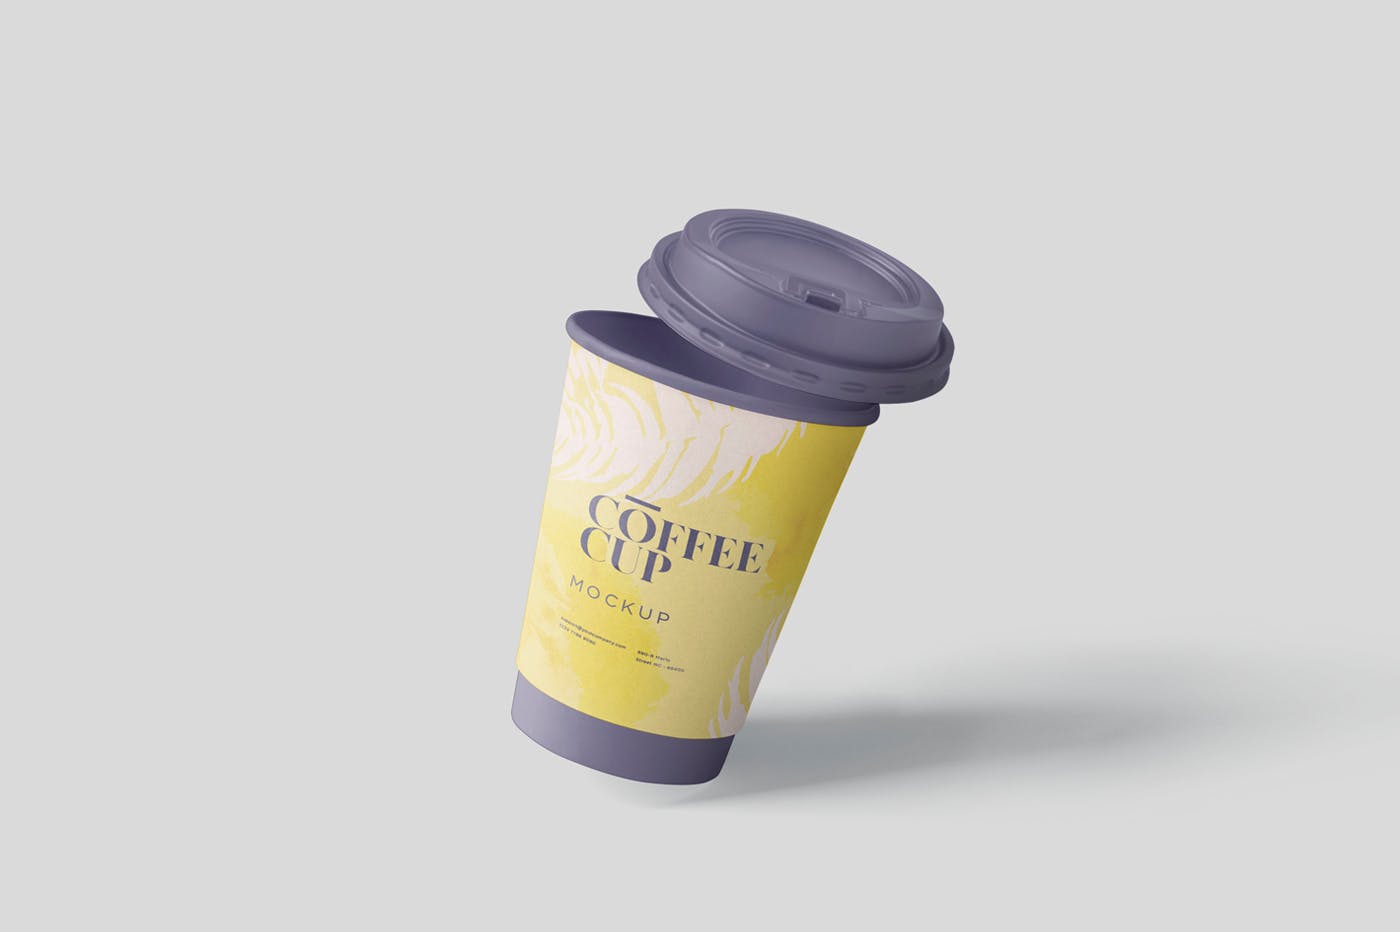 咖啡一次性纸杯设计效果图第一素材精选 Coffee Cup Mockup插图(4)